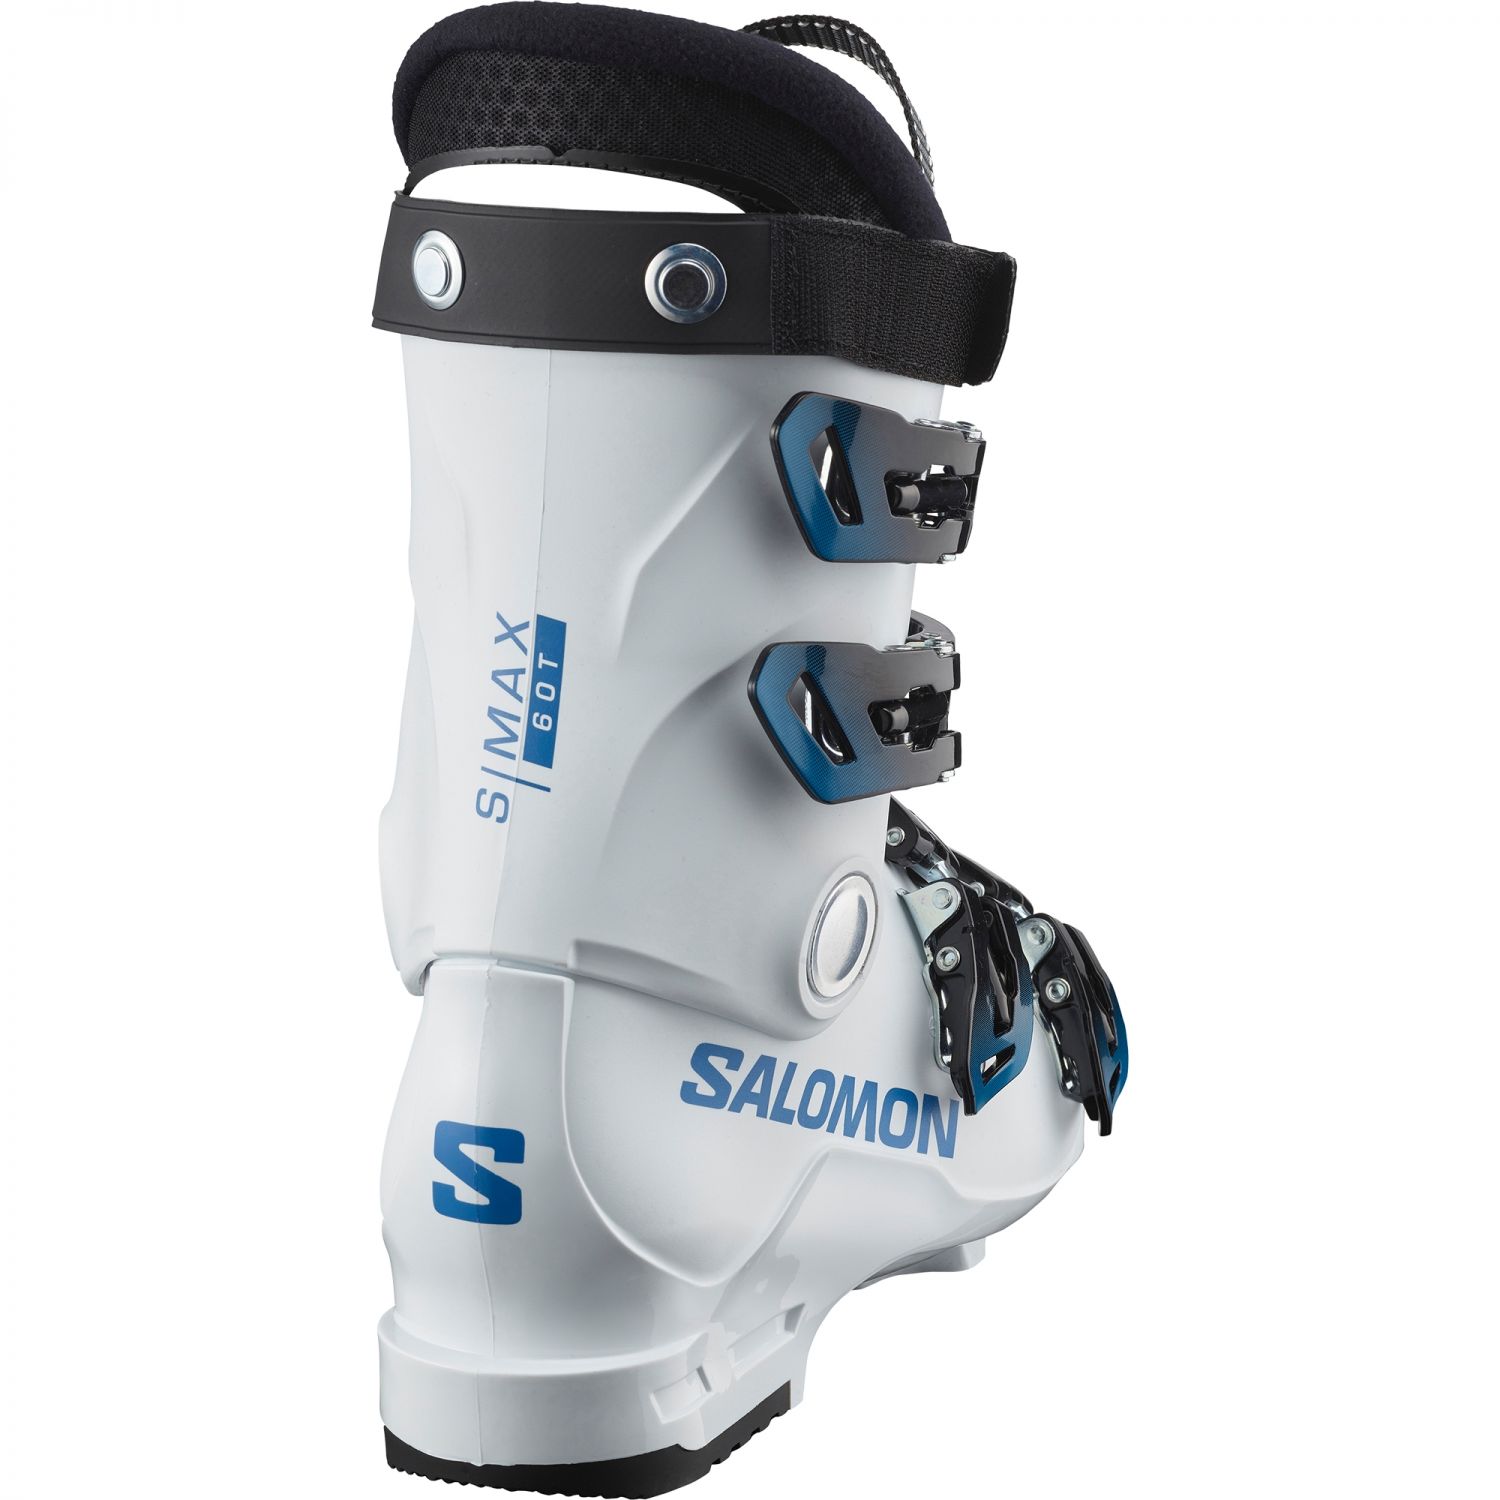 Salomon S/MAX 60T L, Skischuhe, Junior, weiß/blau